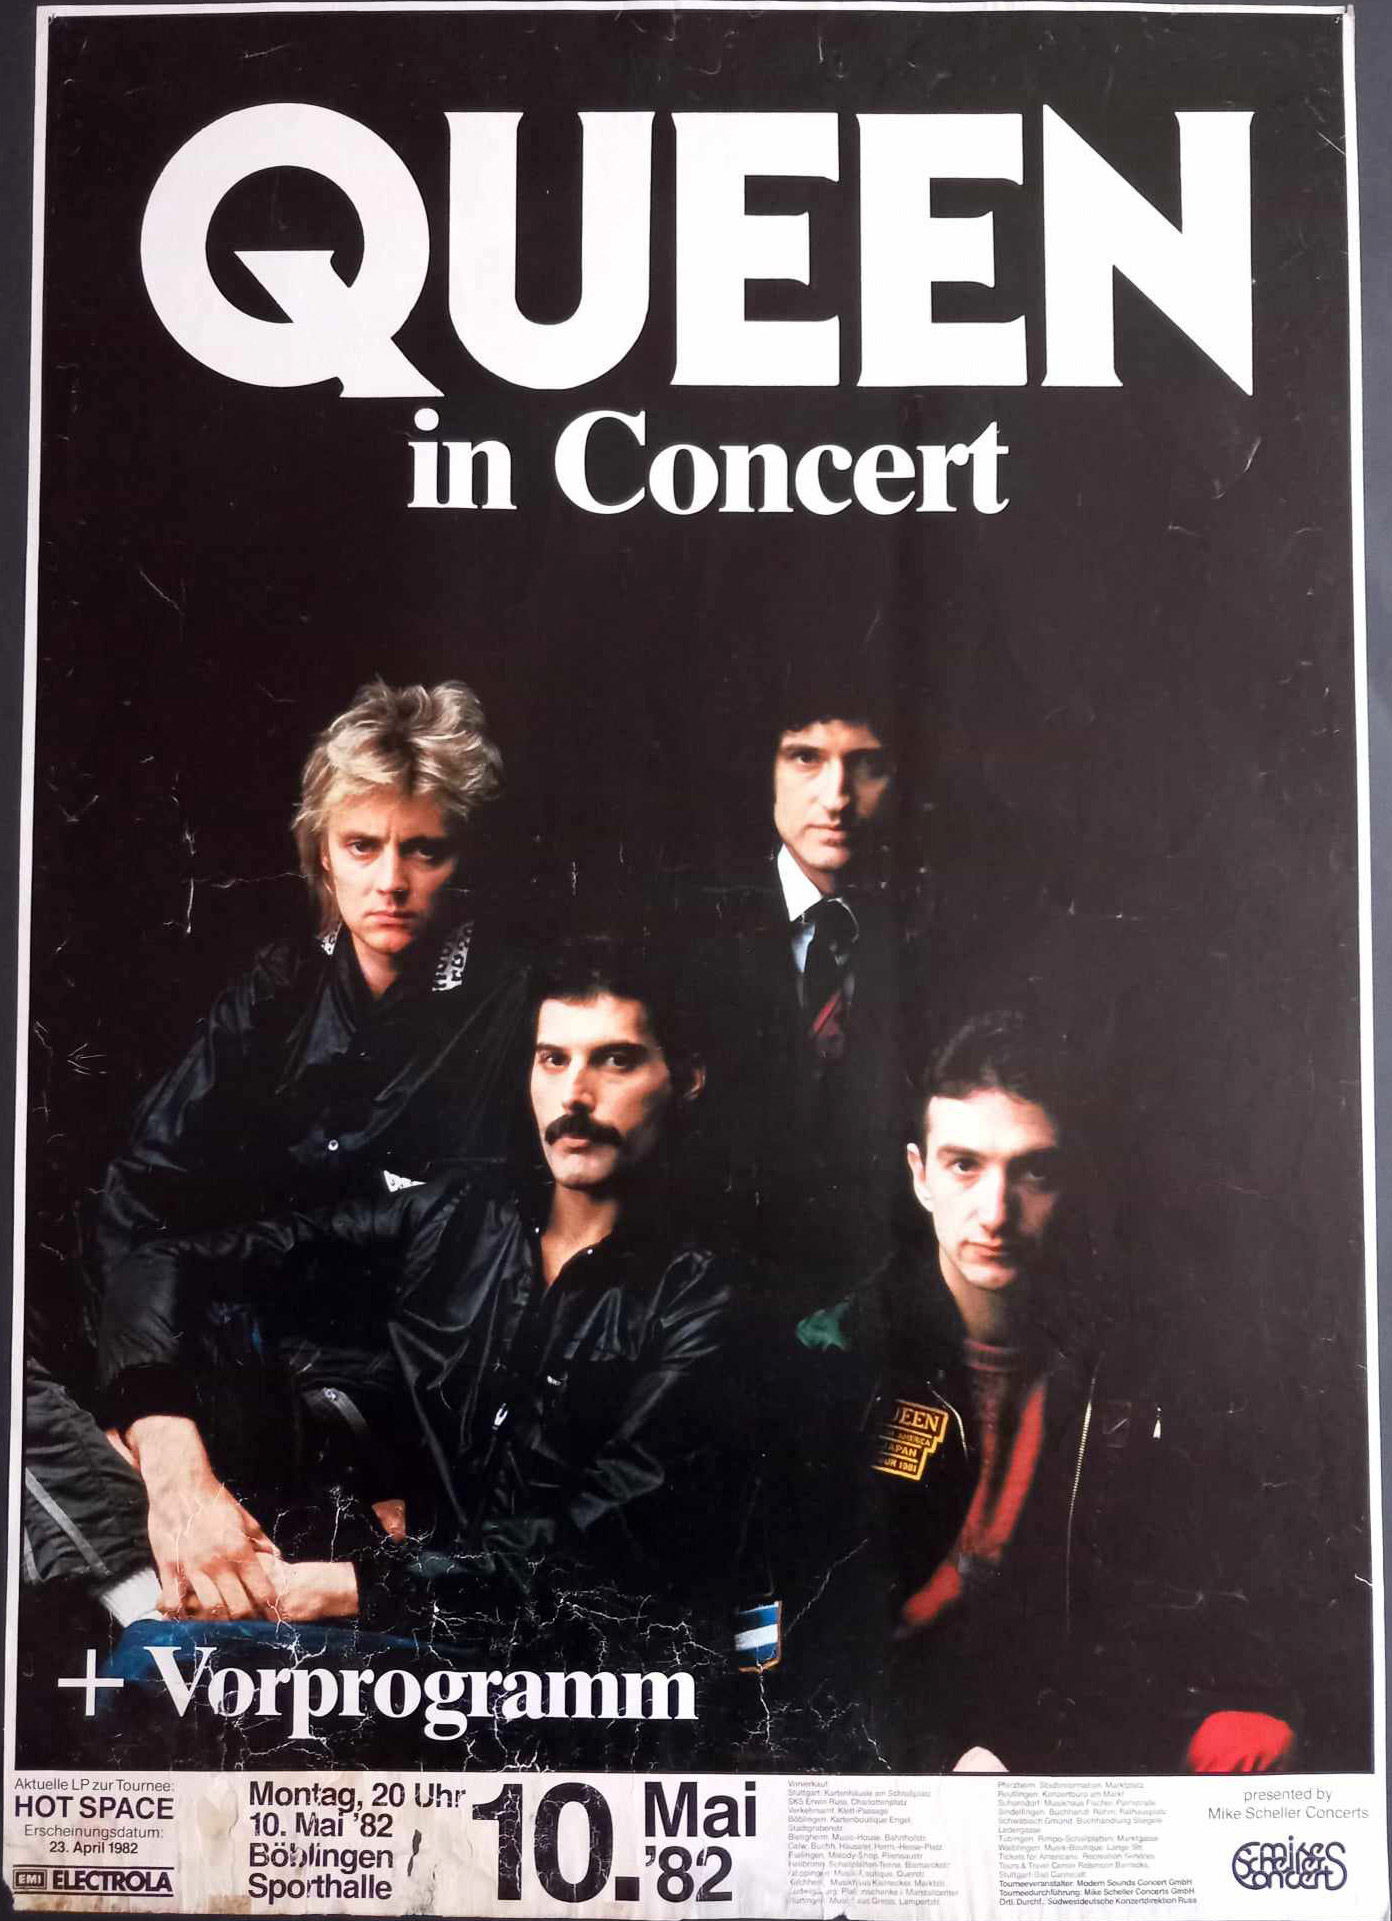 Queen in Stuttgart on 10.05.1982